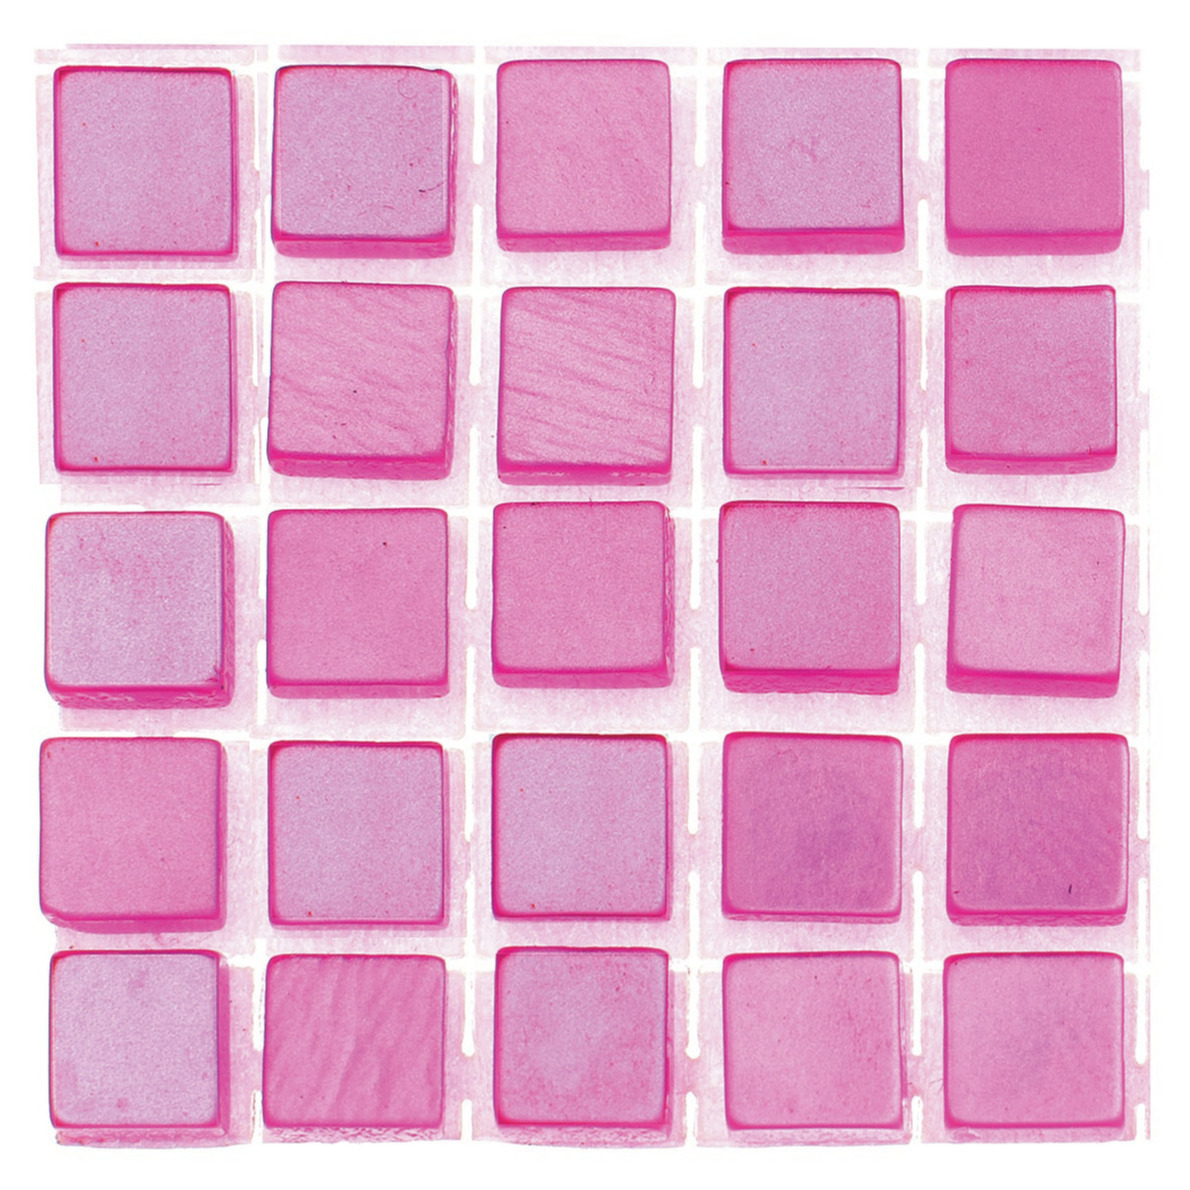 595x stuks mozaieken maken steentjes/tegels kleur roze 5 x 5 x 2 mm -